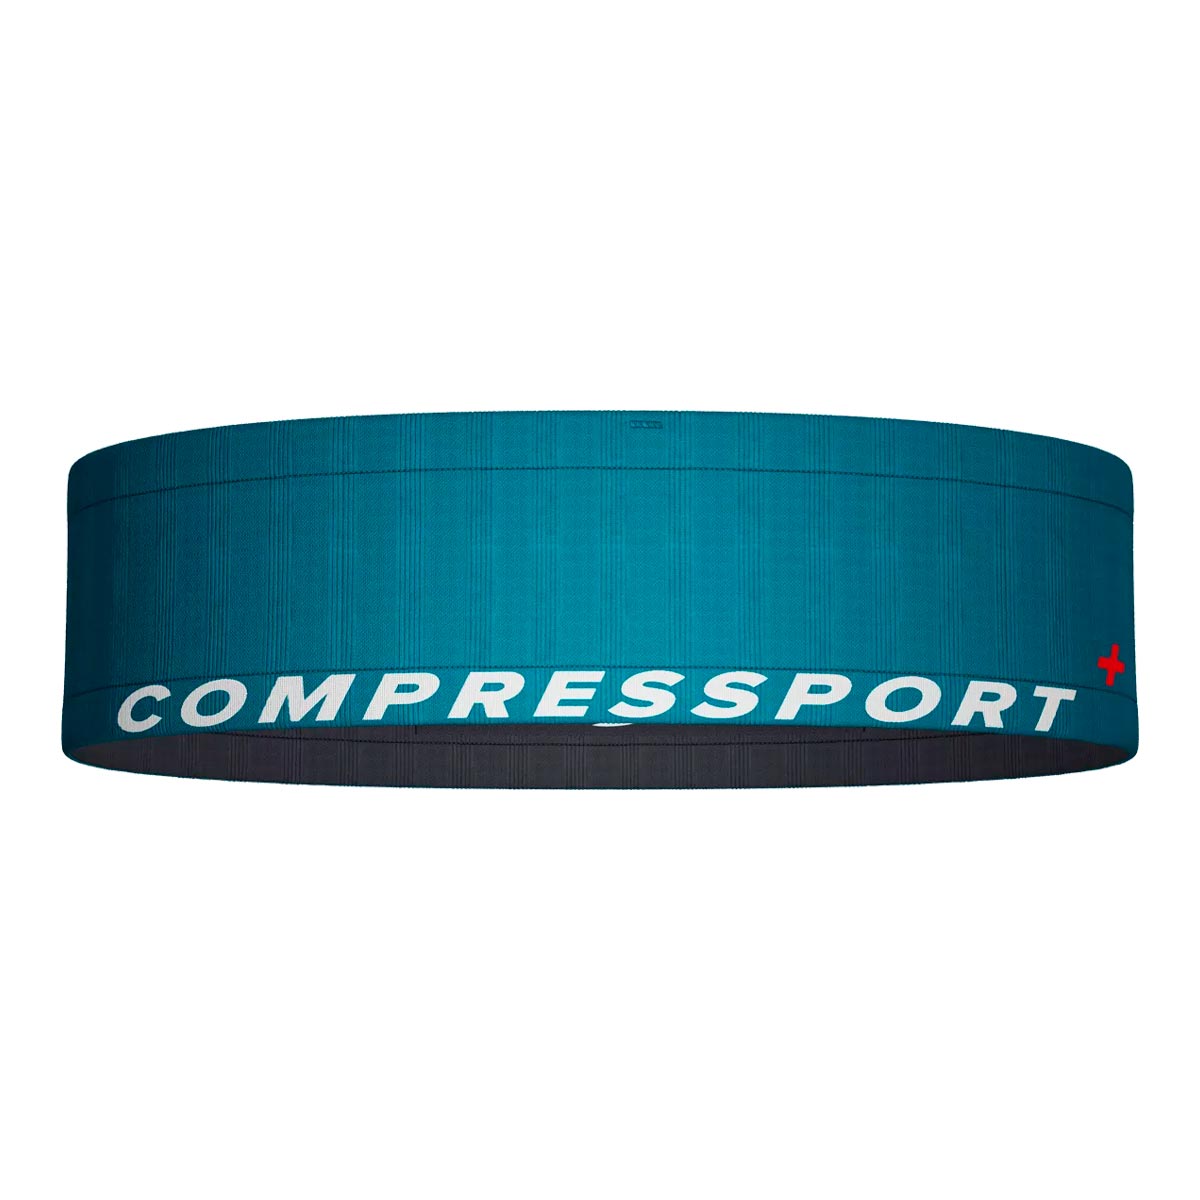 Compressport - Cinturón de Competencia Azul/Esmeralda